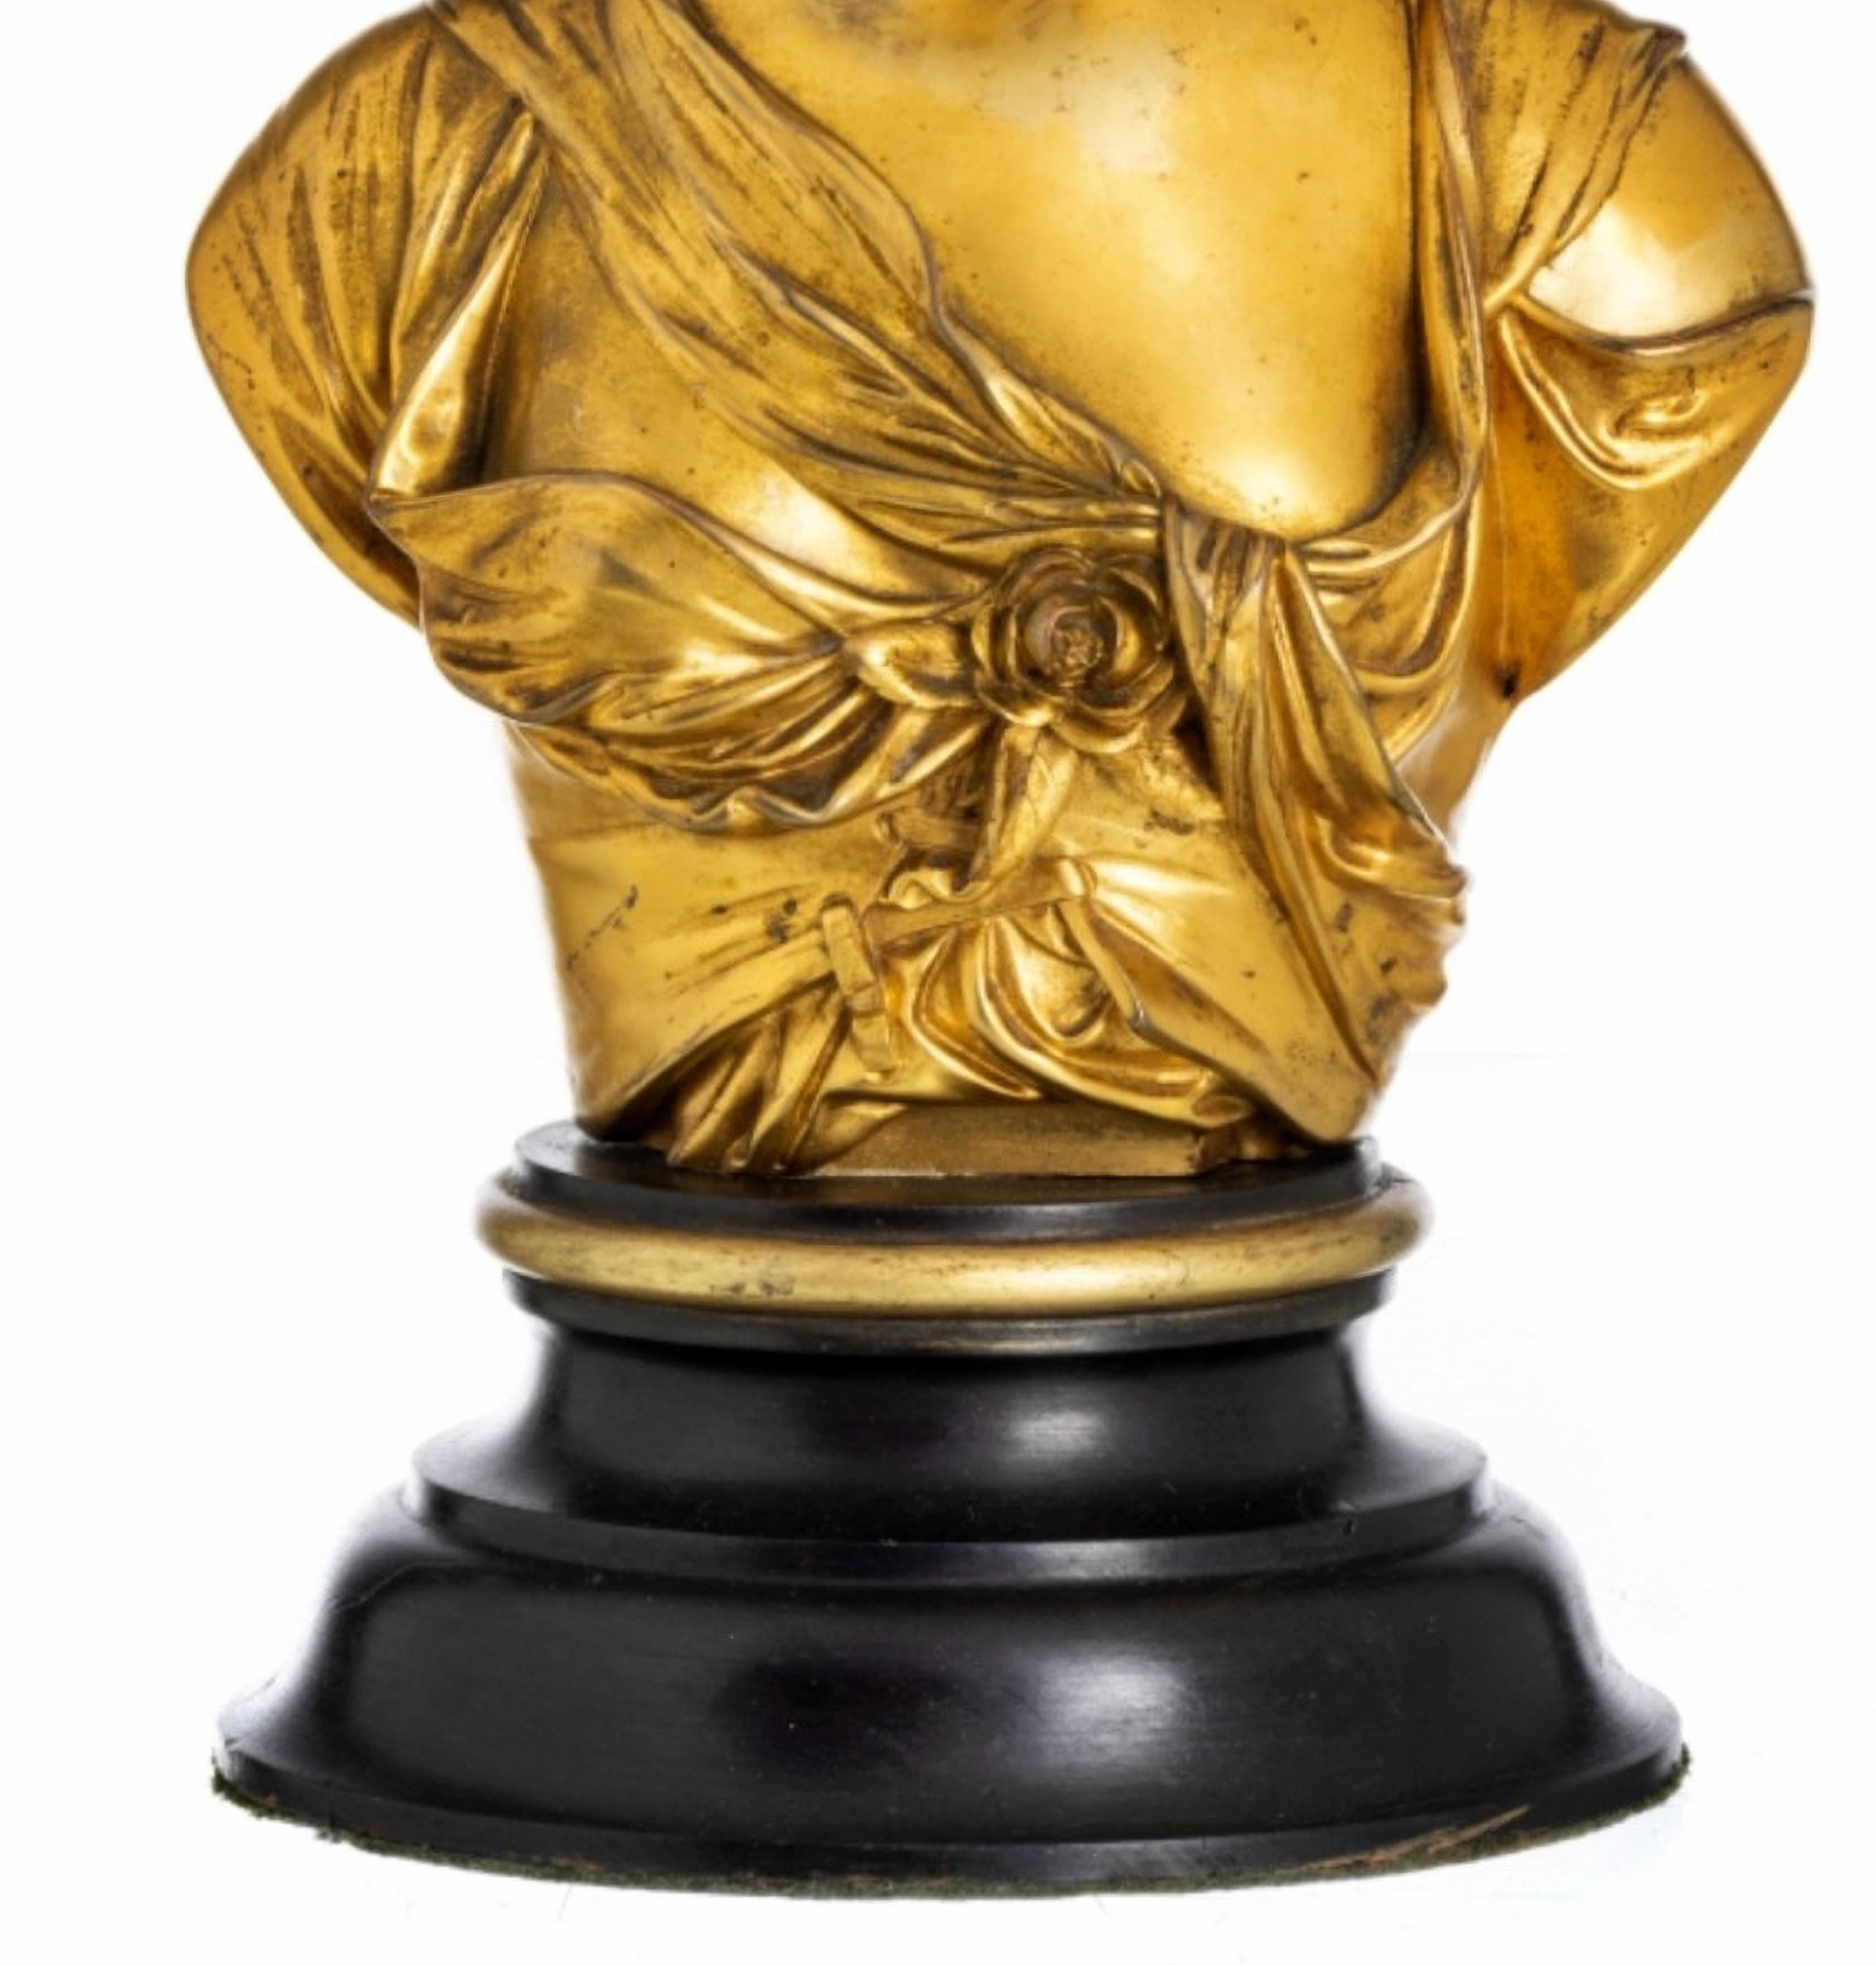 Weibliche Figur Skulptur Léopold OUDRY (1854-1882)

Büste aus Kunstbronze, auf einem lackierten Holzsockel stehend. Gezeichnet L. Oudry.
Höhe: (insgesamt) 40 cm
gute Bedingungen